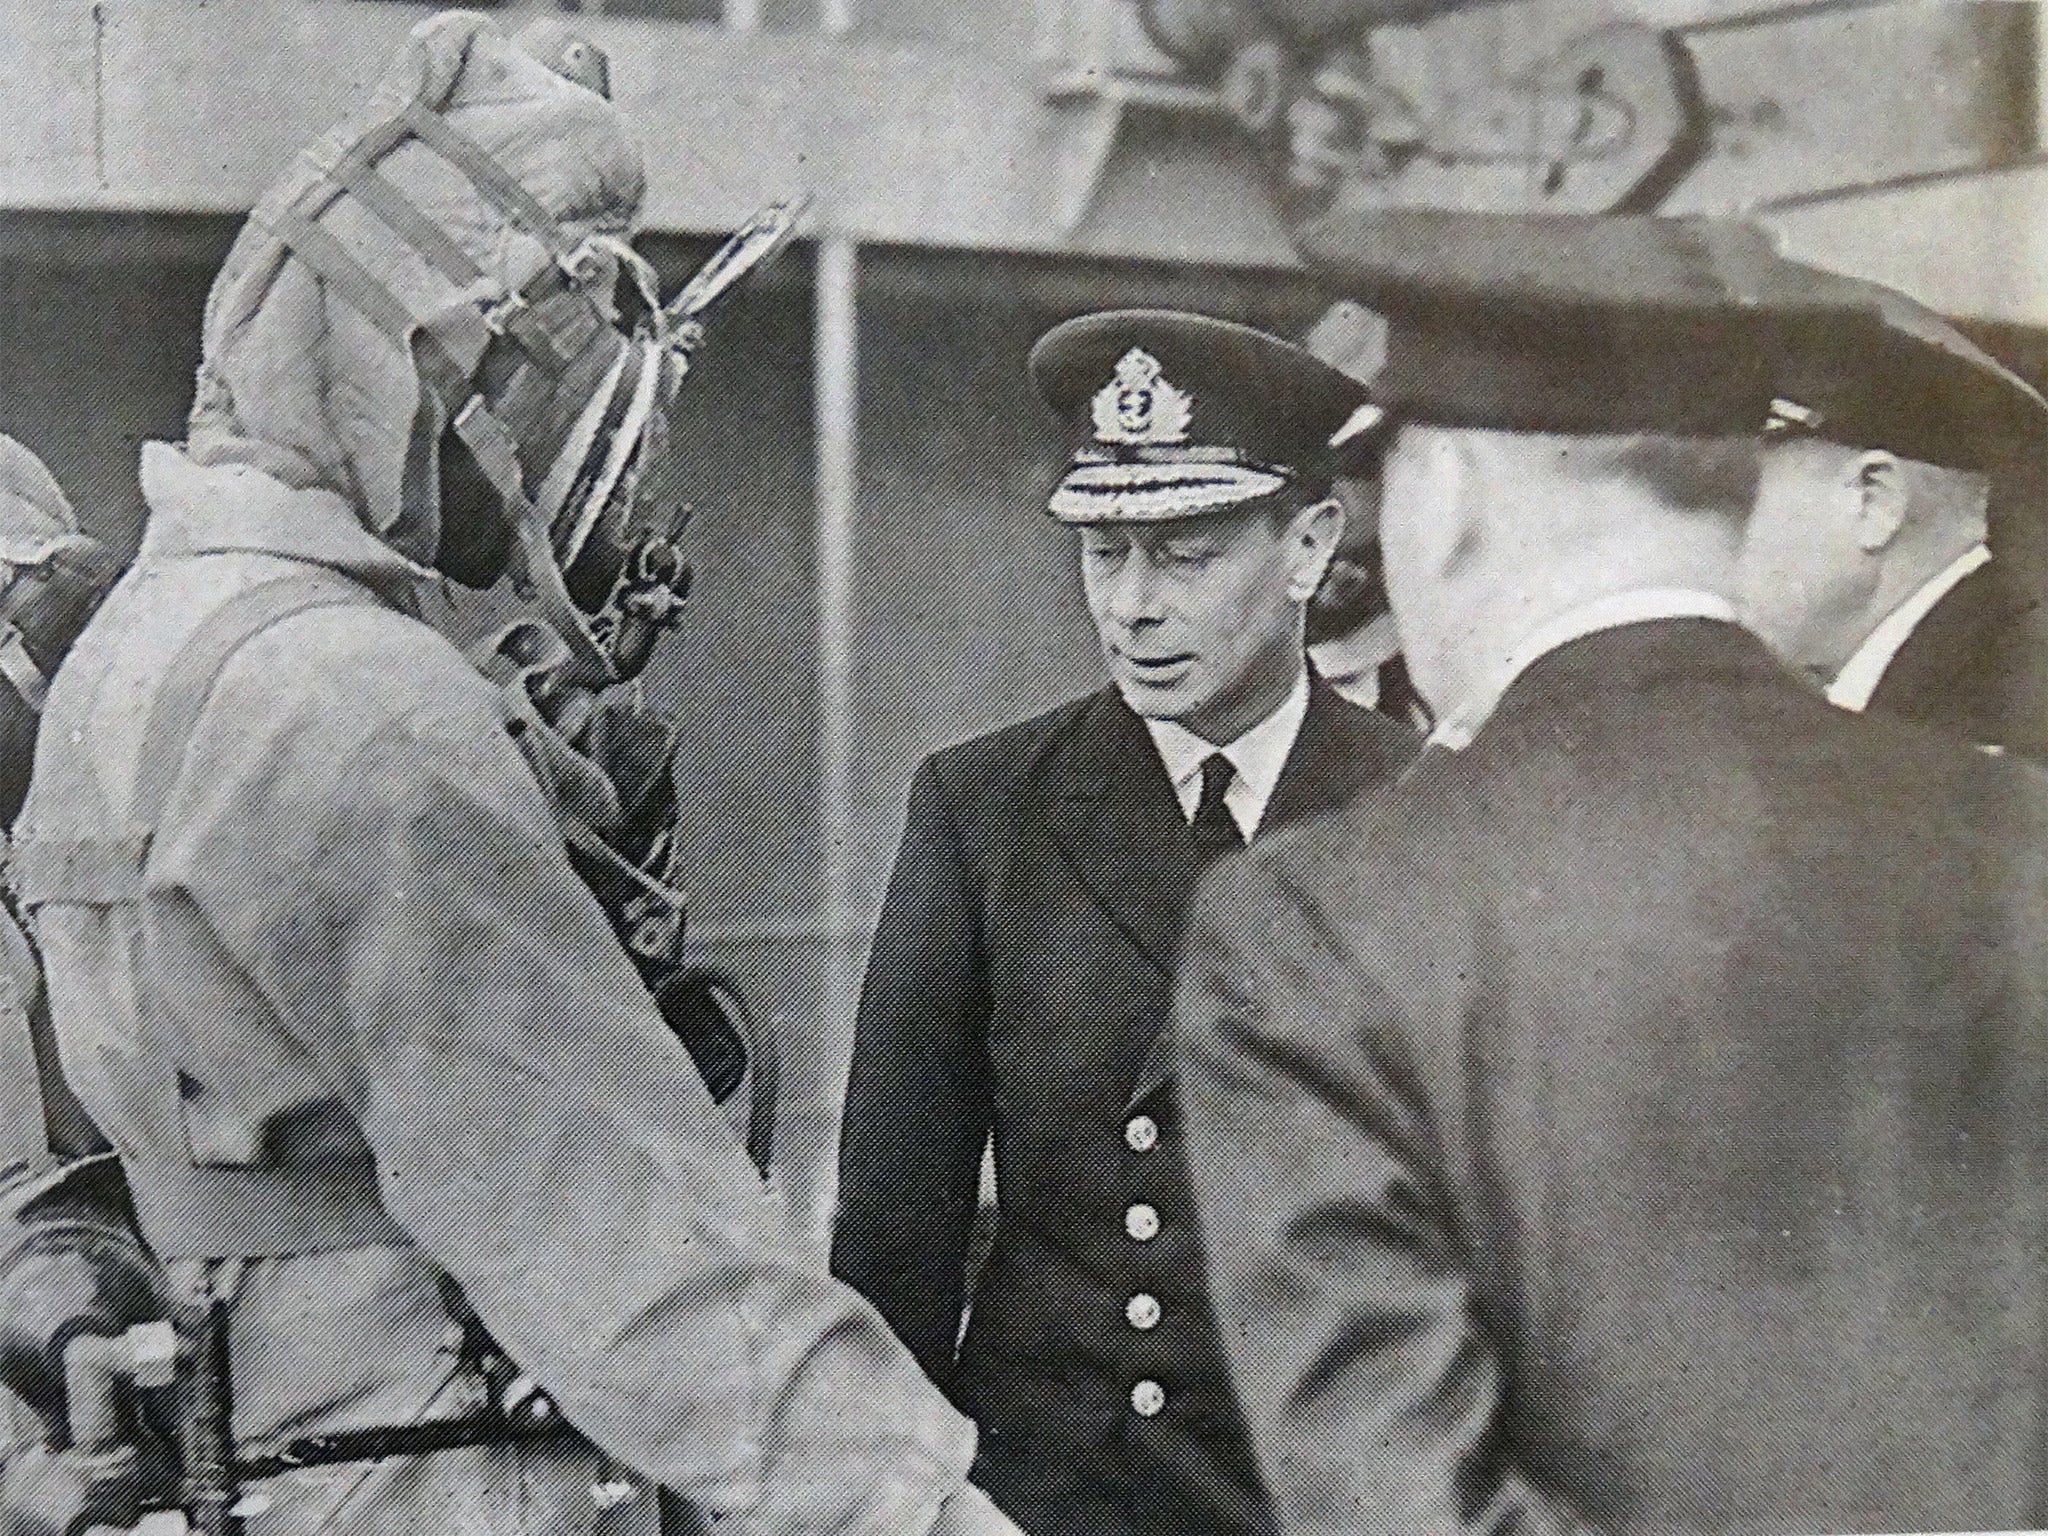 Tony Eldridge (in diving suit) meeting King George VI aboard HMS Bonaventure in 1944